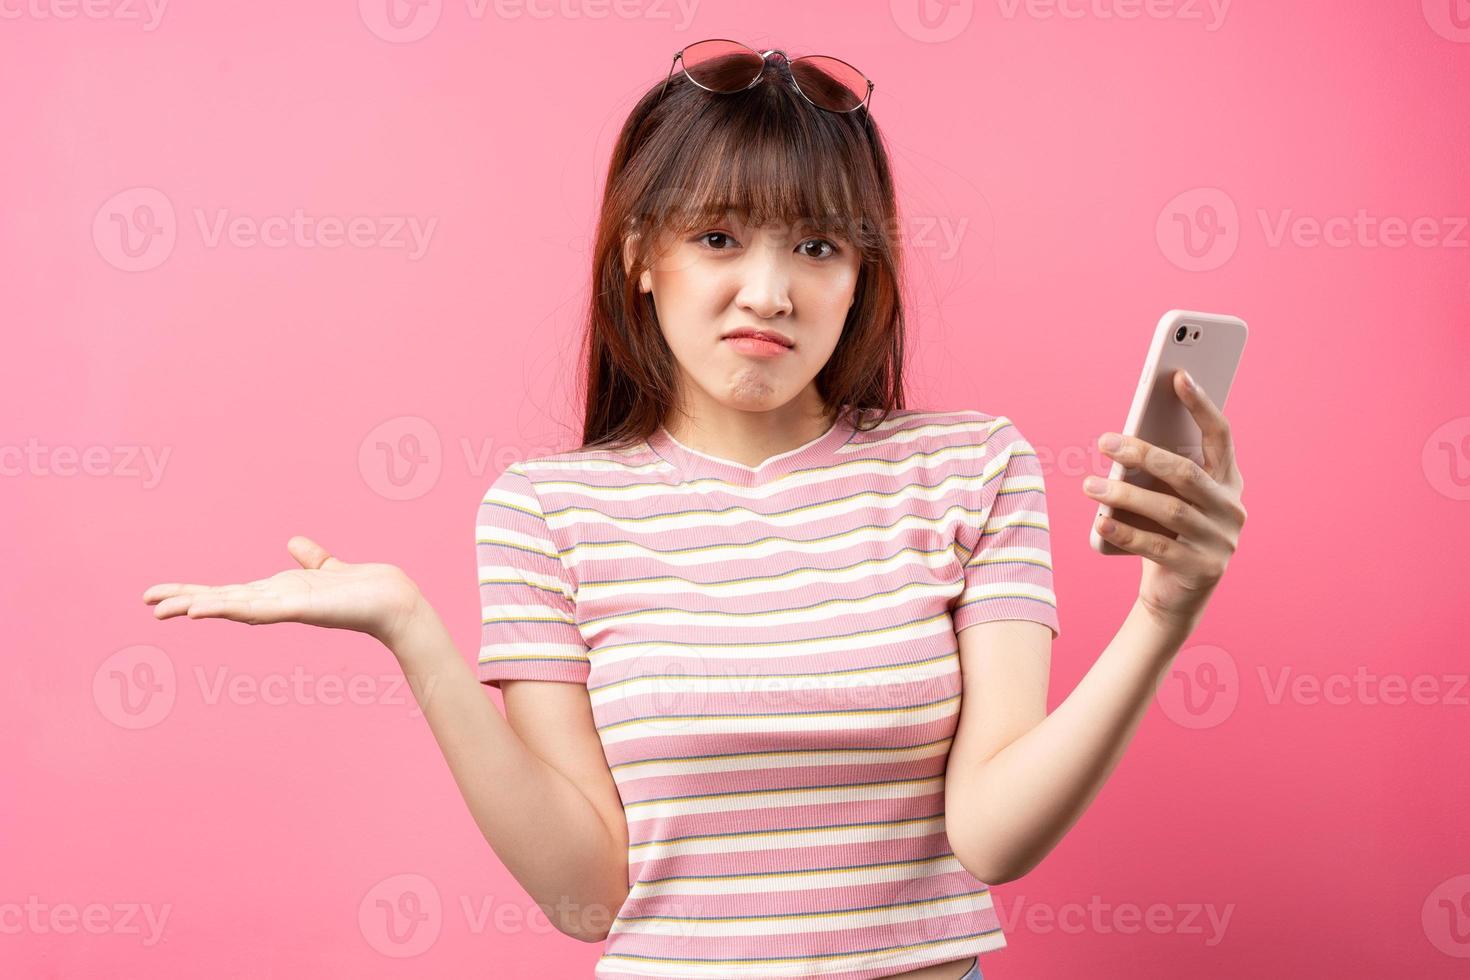 afbeelding van een jong Aziatisch meisje met een roze t-shirt op een roze achtergrond foto